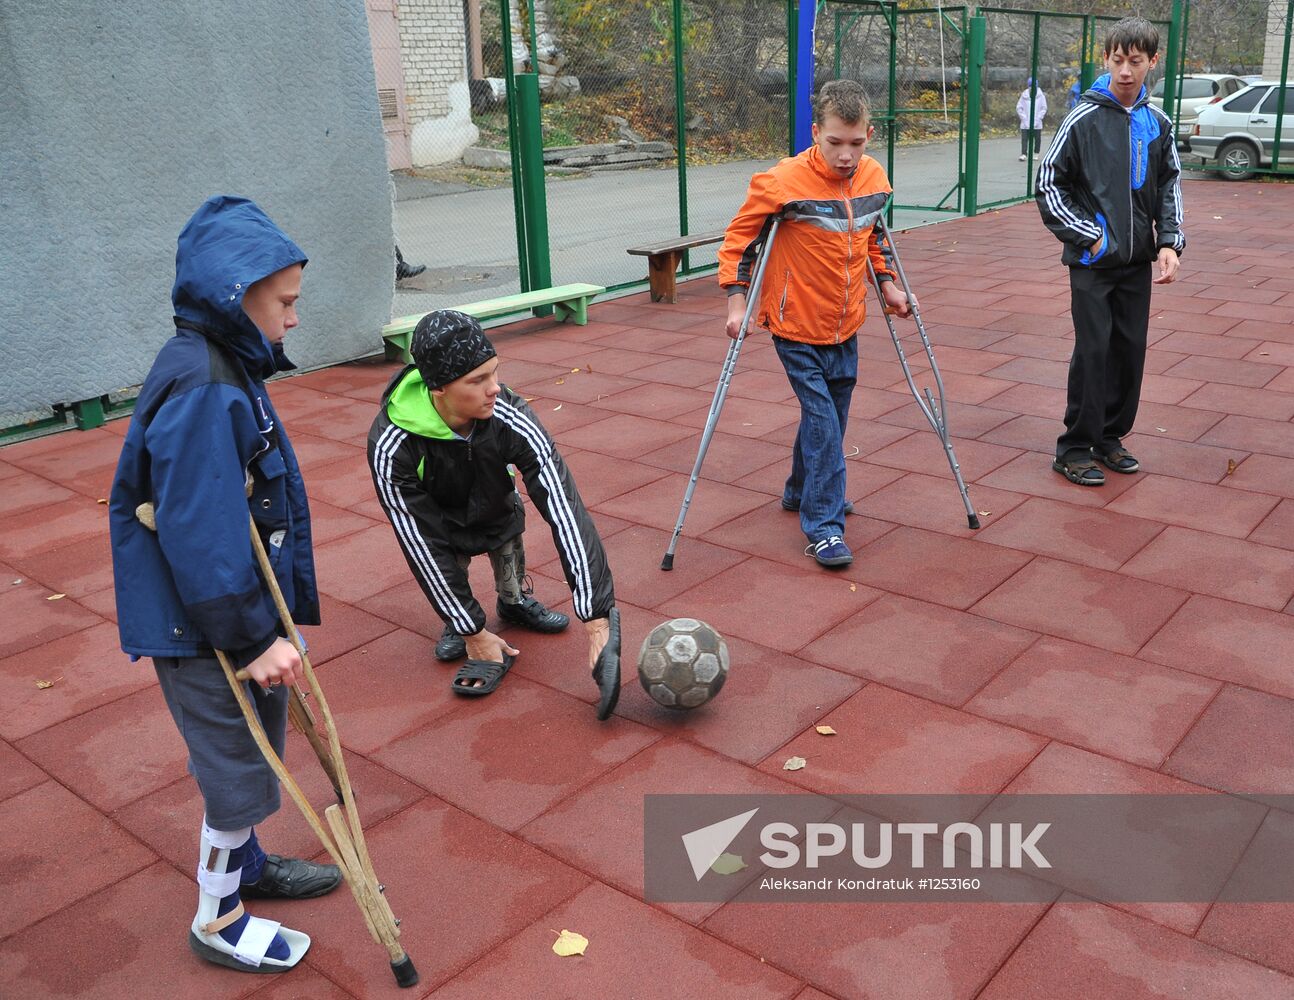 Rehabilitation center for physically impaired children